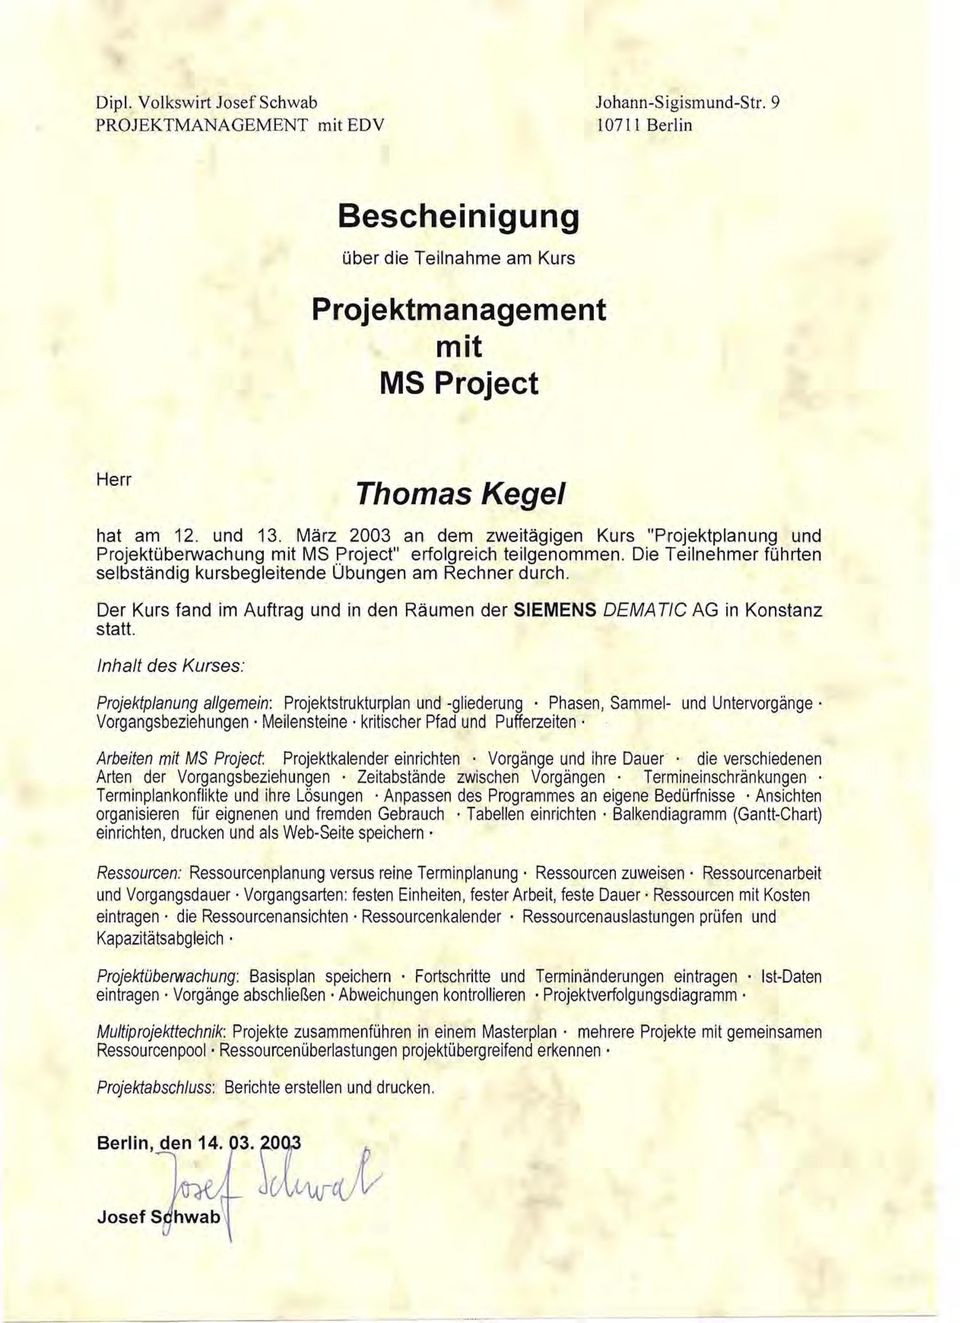 Der Kurs fand im Auftrag und in den Räumen der SIEMENS OEMA TlC AG in Konstanz statt. Inhalt des Kurses: Projektplanung allgemein: Projektstrukturplan und -gliederung.